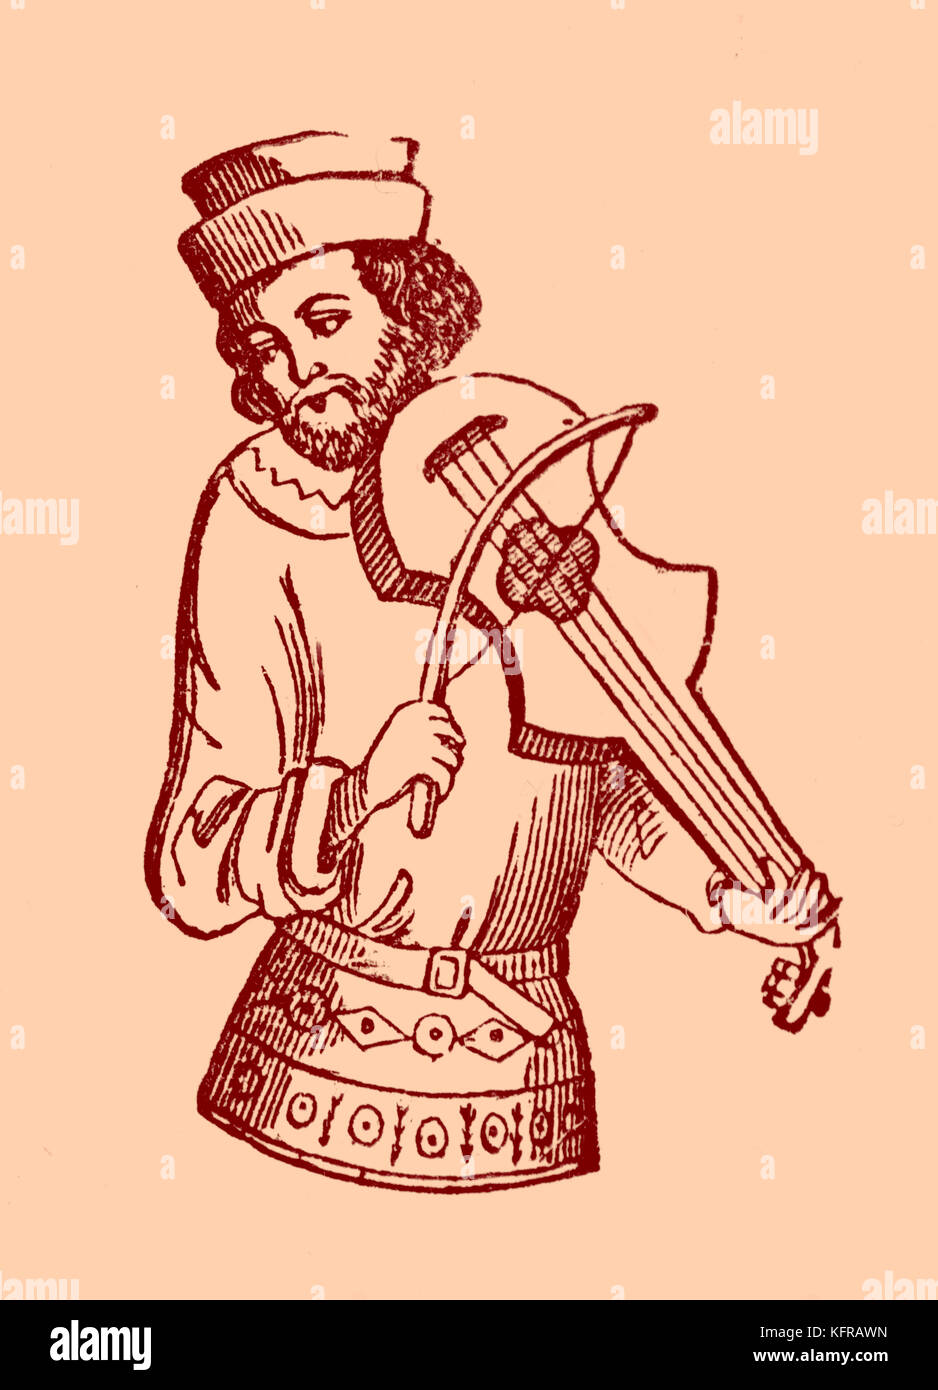 Juggler jouer a vielle, reproduit à partir d'une illustration dans un manuscrit du 15e siècle. La vielle est un instrument à cordes frottées, avec un corps plus long et plus profond que le violon. Il était populaire dans toute l'Europe dans la période médiévale. Banque D'Images